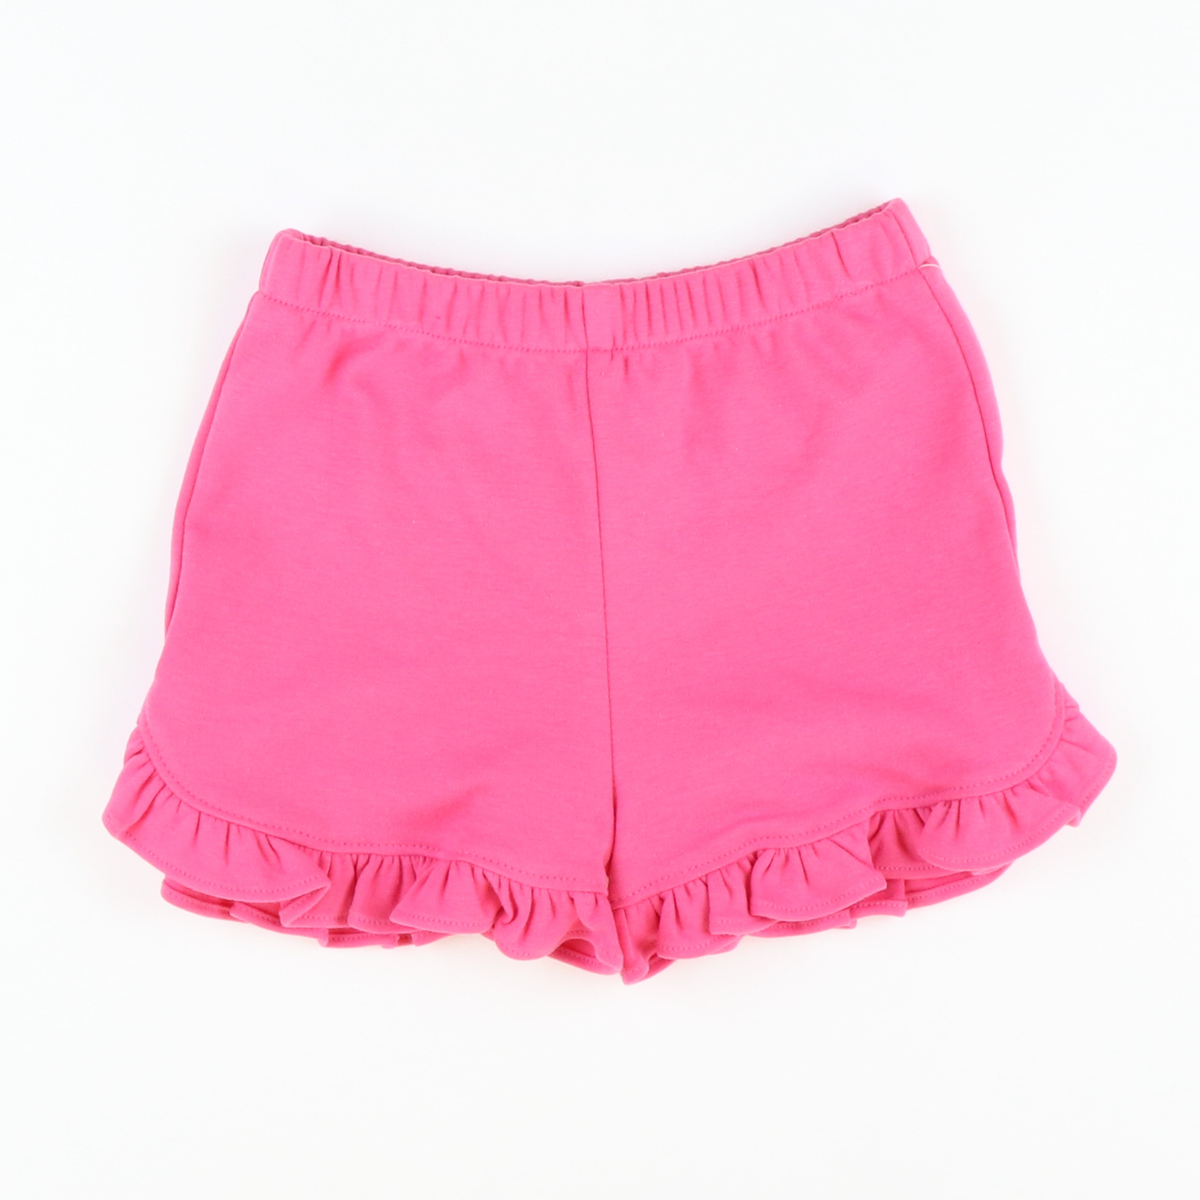 Out & About Ruffle Shorts - Fucshia Knit